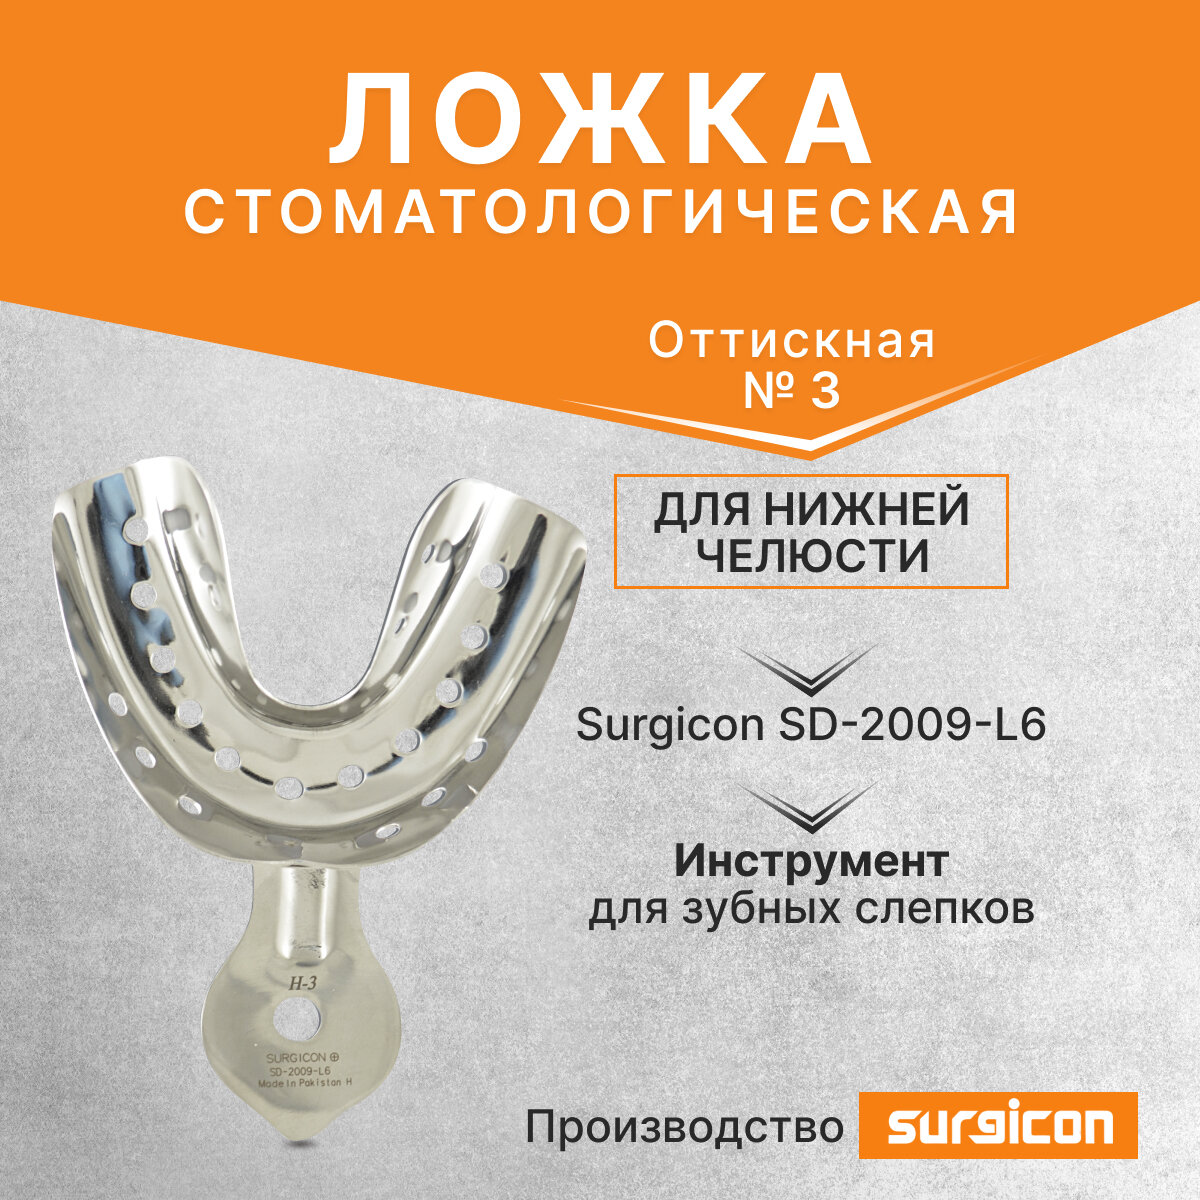 Ложка оттискная стоматологическая для нижней челюсти №3 Surgicon SD-2009-L6